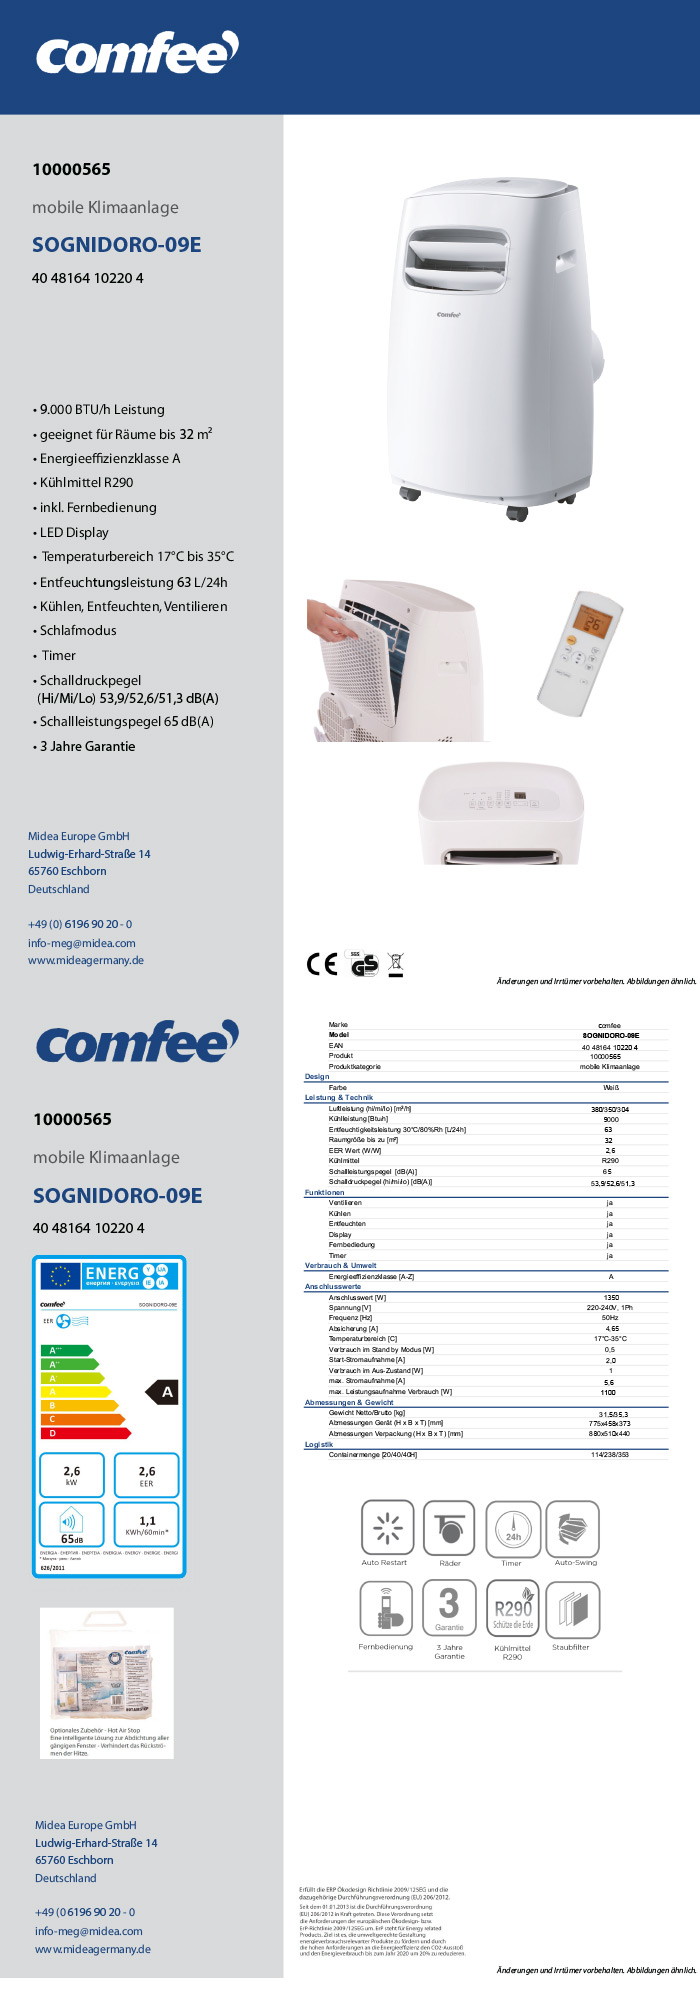 Comfee mobile Klimaanlage »SOGNIDORO-09E« LIDL 